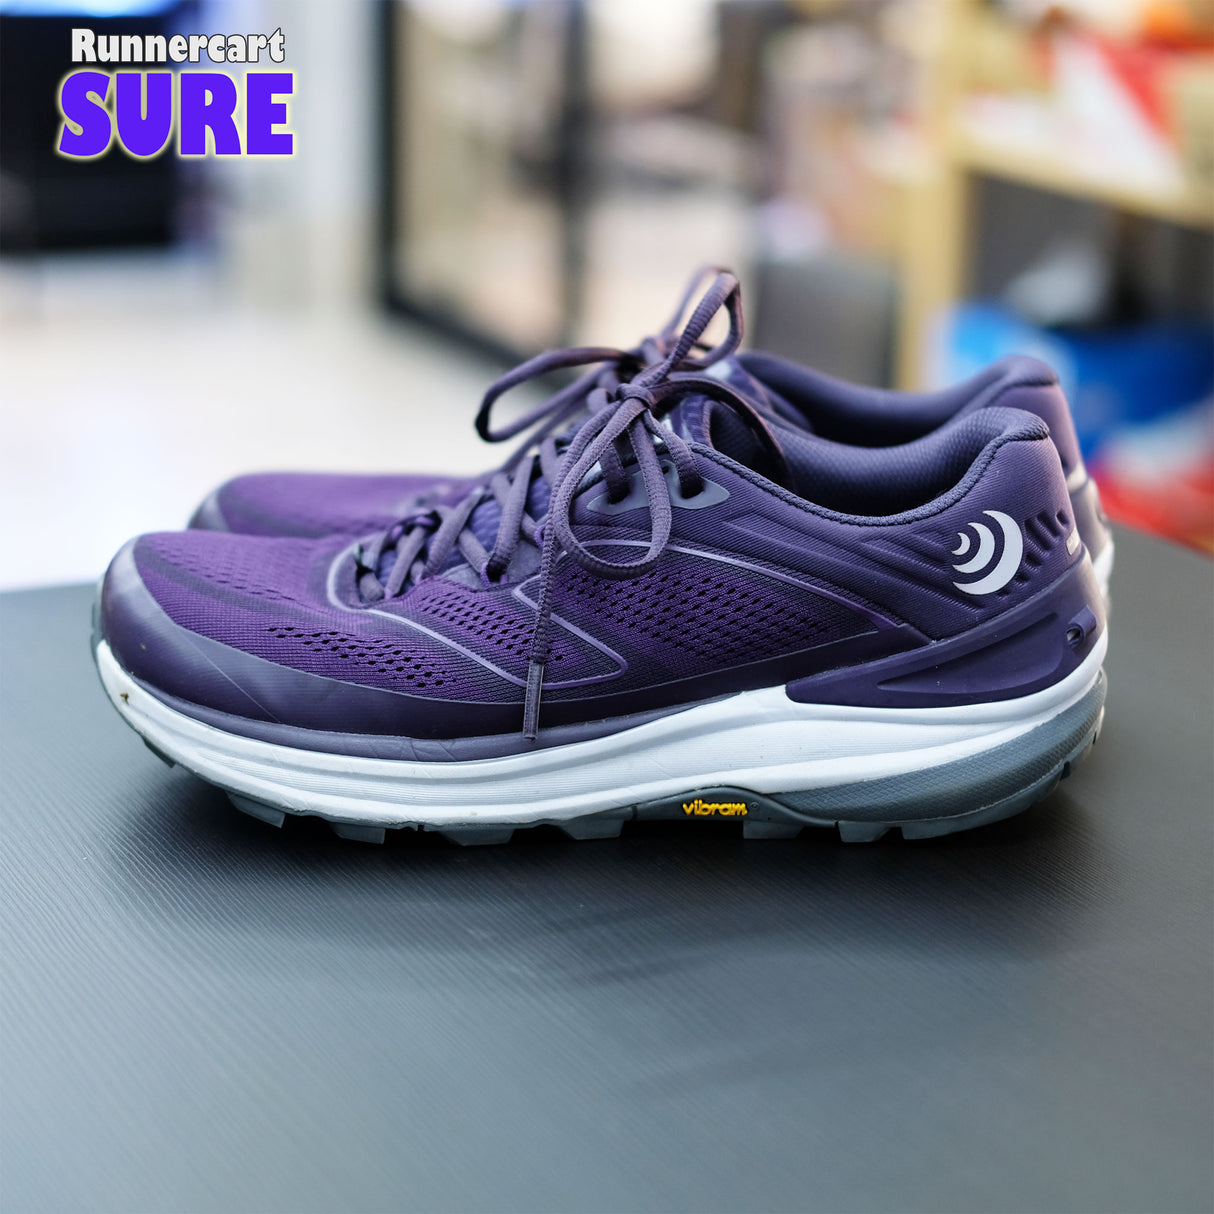 Sure_TOPO Ultraventure 2 (Purple Gray) Size 7.5 US (ไม่มีกล่อง)